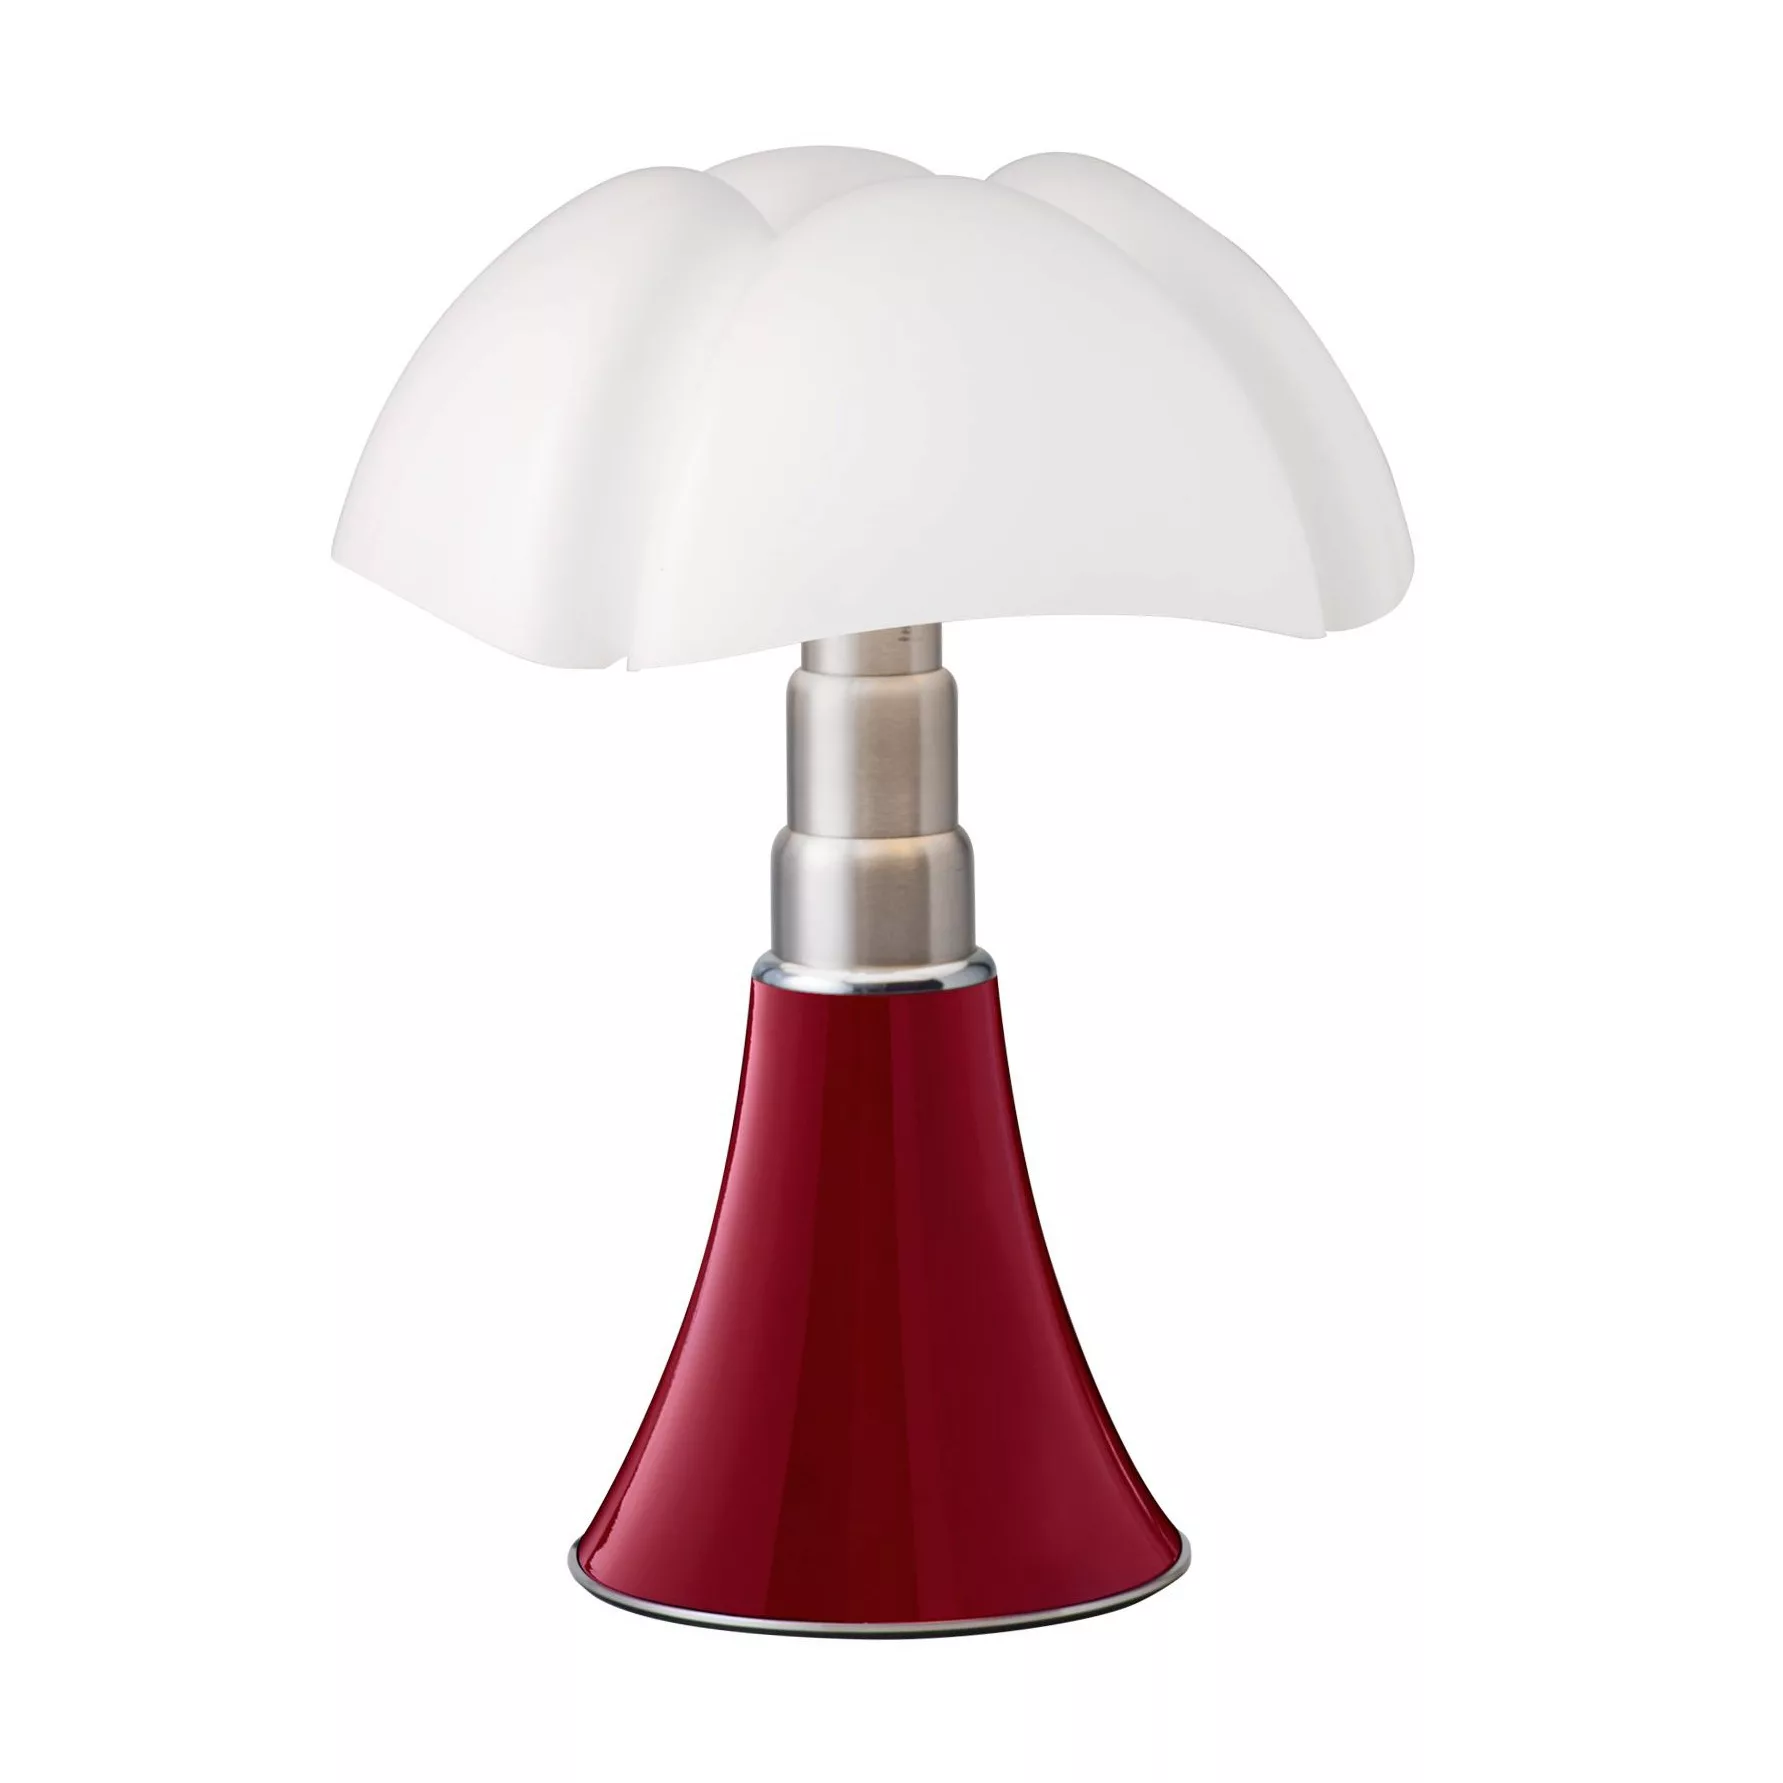 Martinelli Luce - Minipipistrello LED Tischleuchte - purpur rot/Diffusor op günstig online kaufen